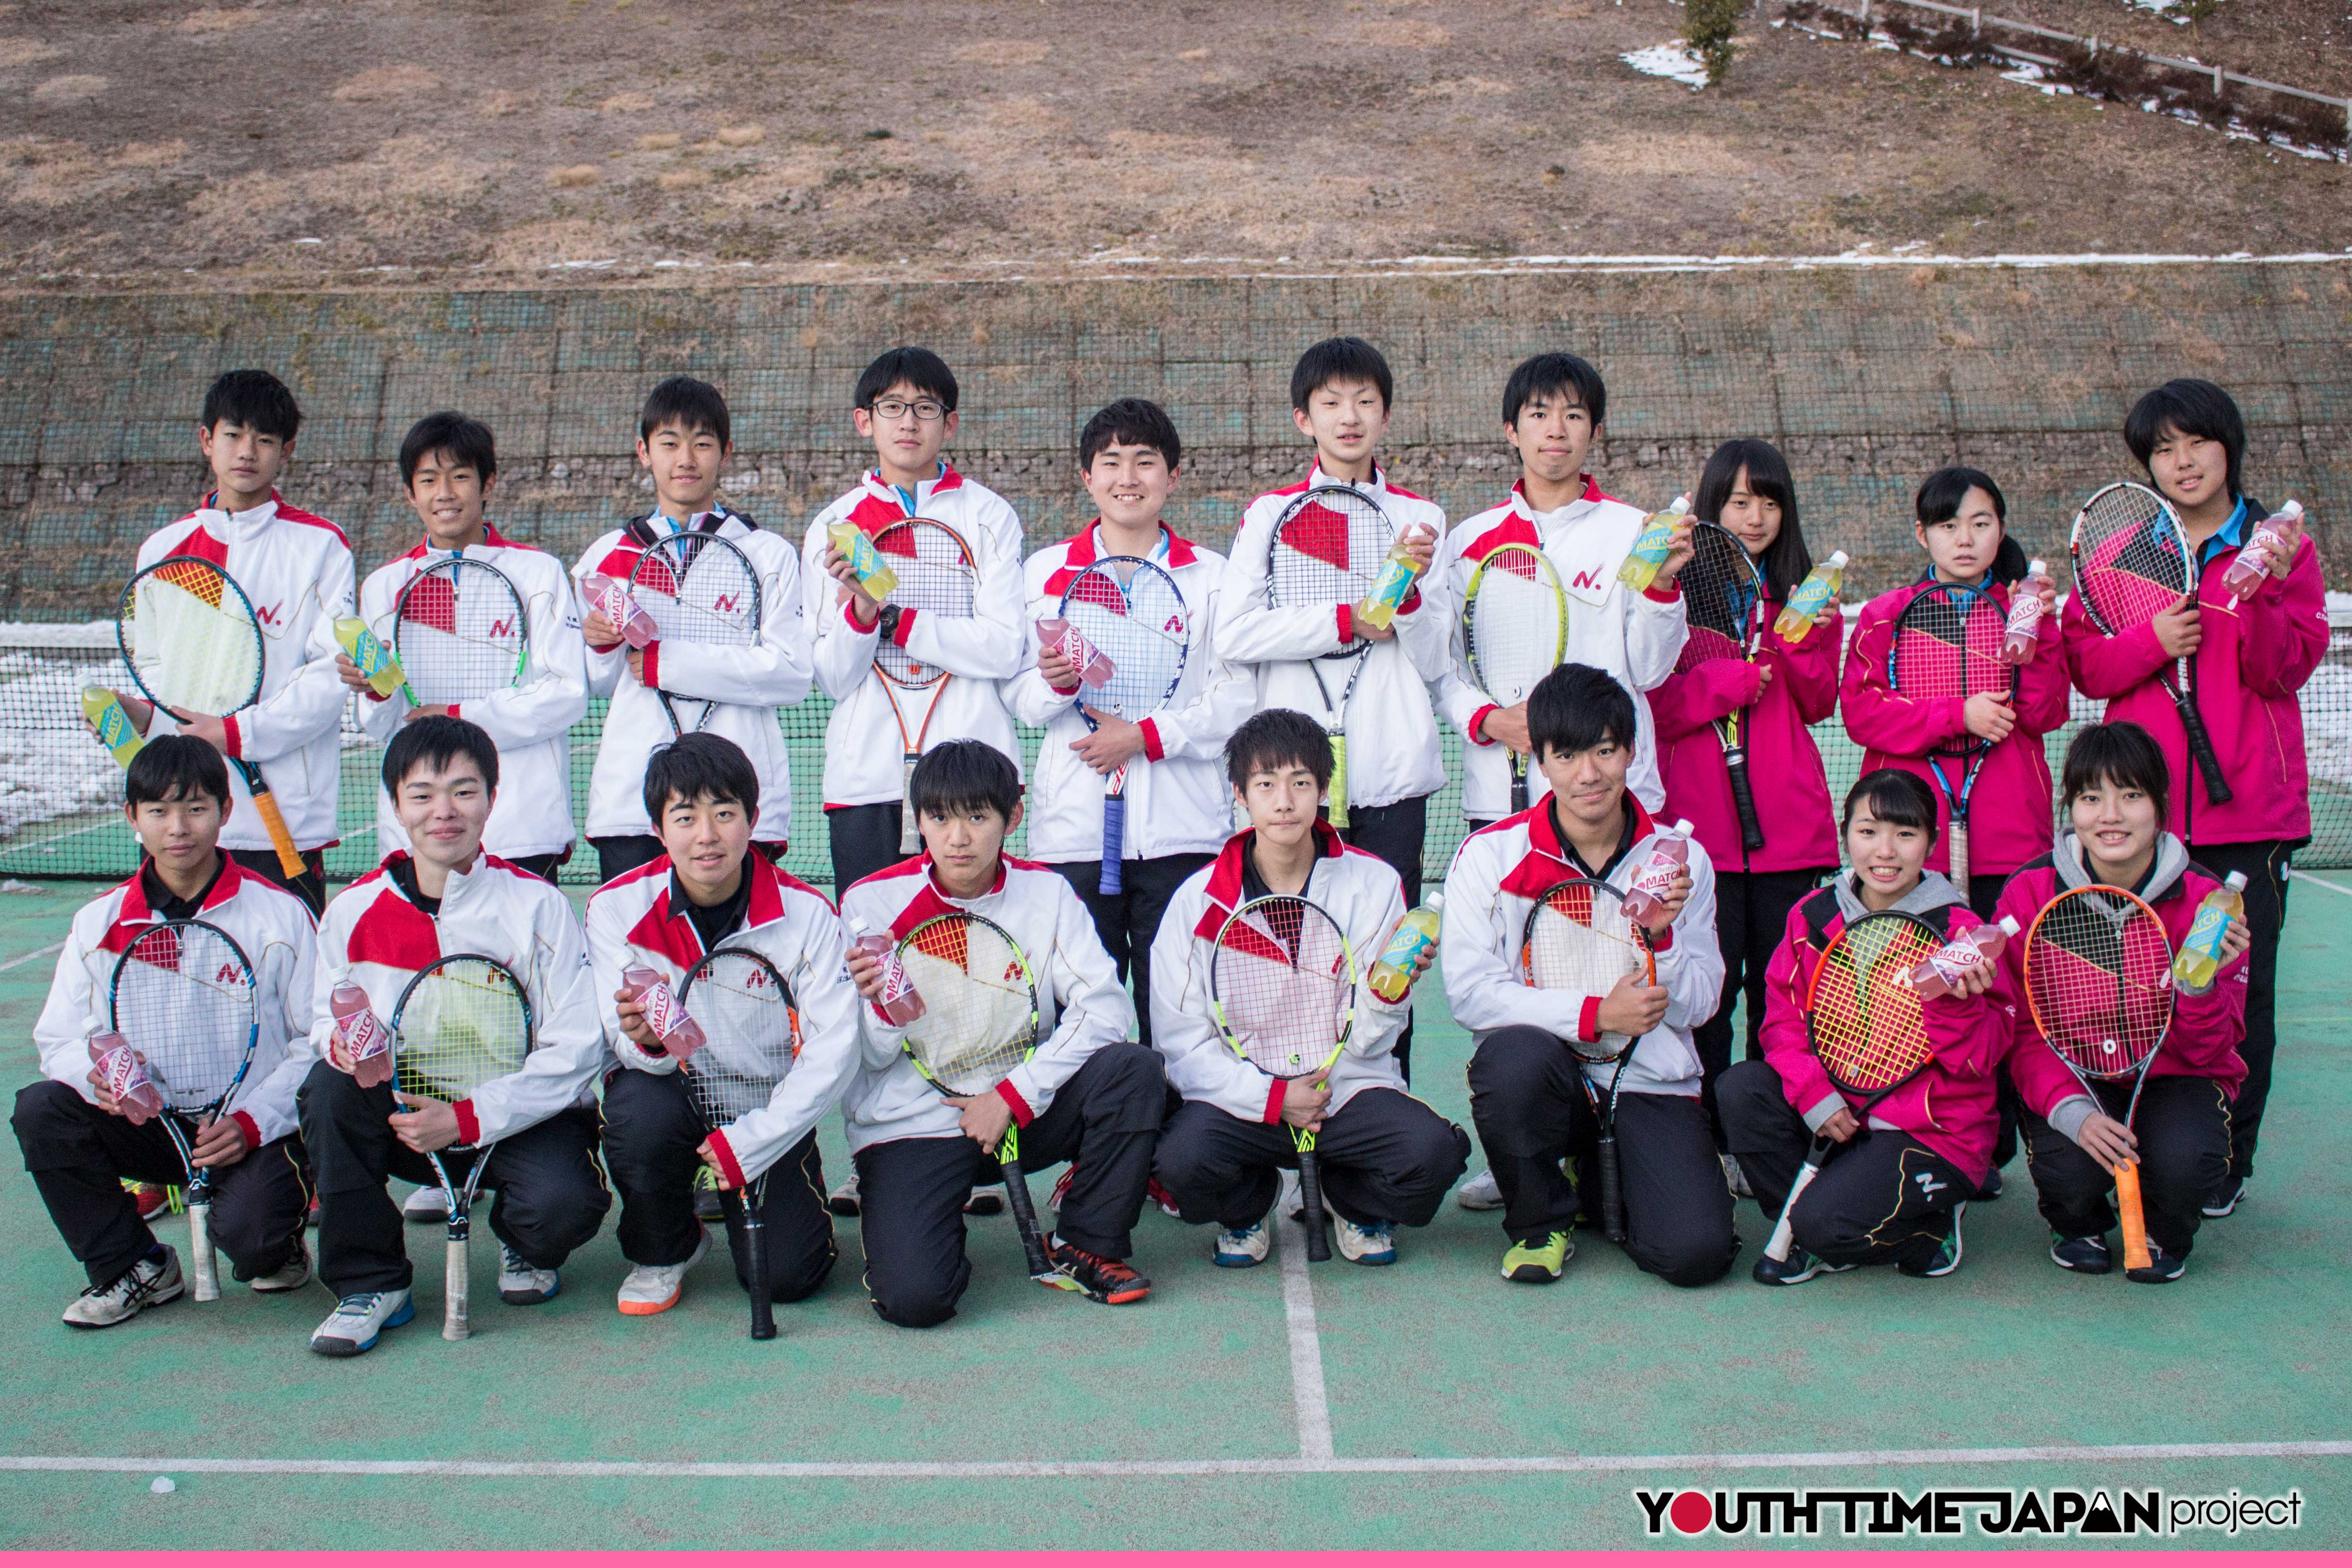 日本大学明誠高等学校 硬式テニス部 Bukatsu魂 Supported By Match Season7 Youth Time Japan Project Web